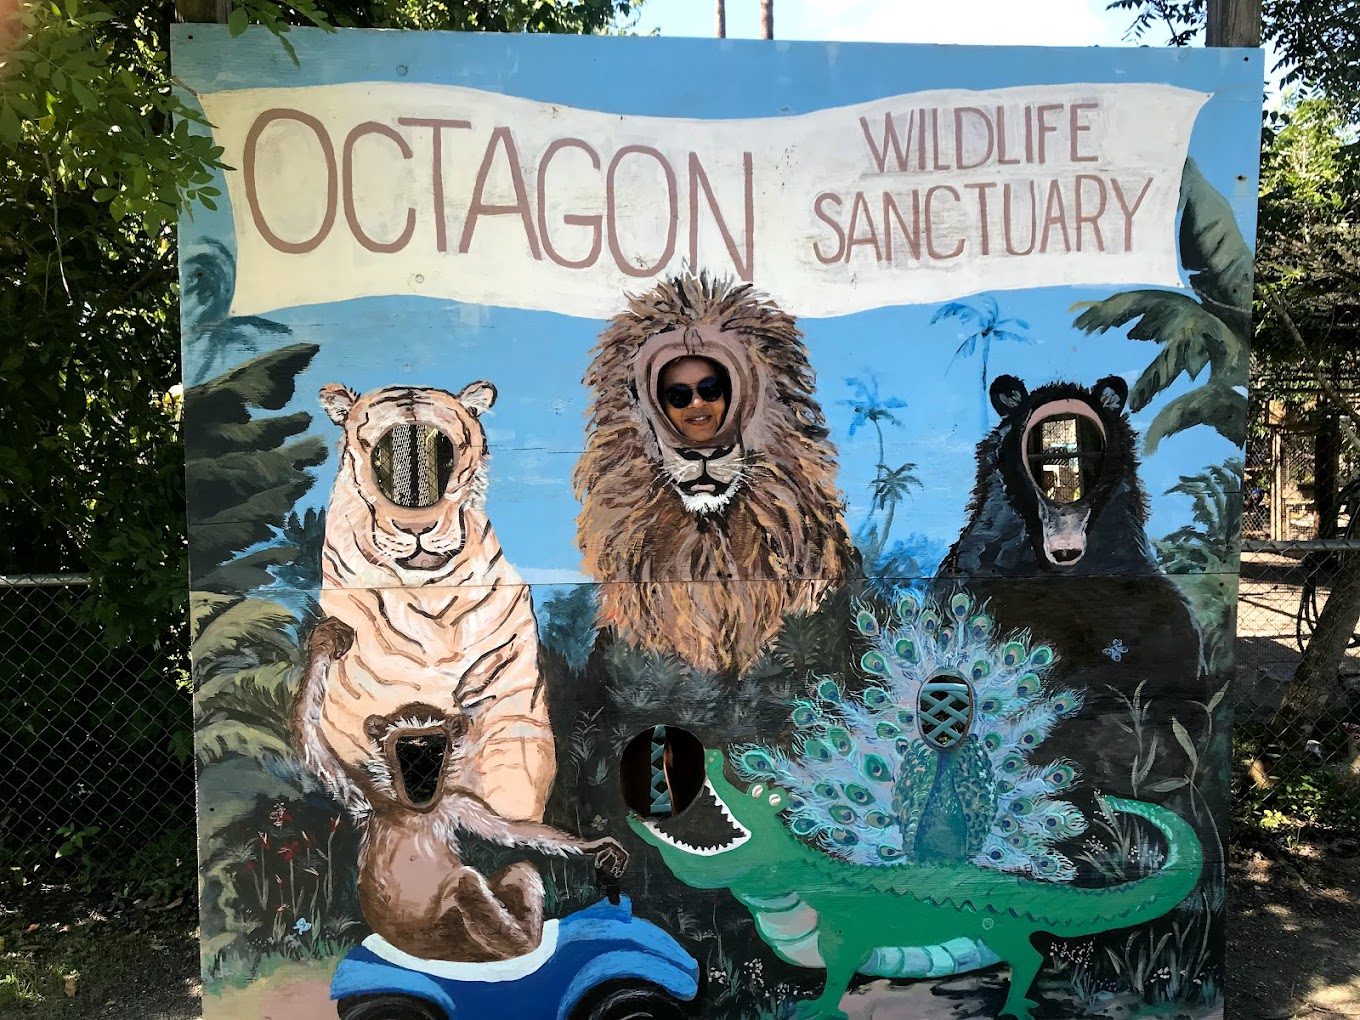 Octagon Wildlife Sanctuary Travel | Zoo and Wildlife Sanctuary 